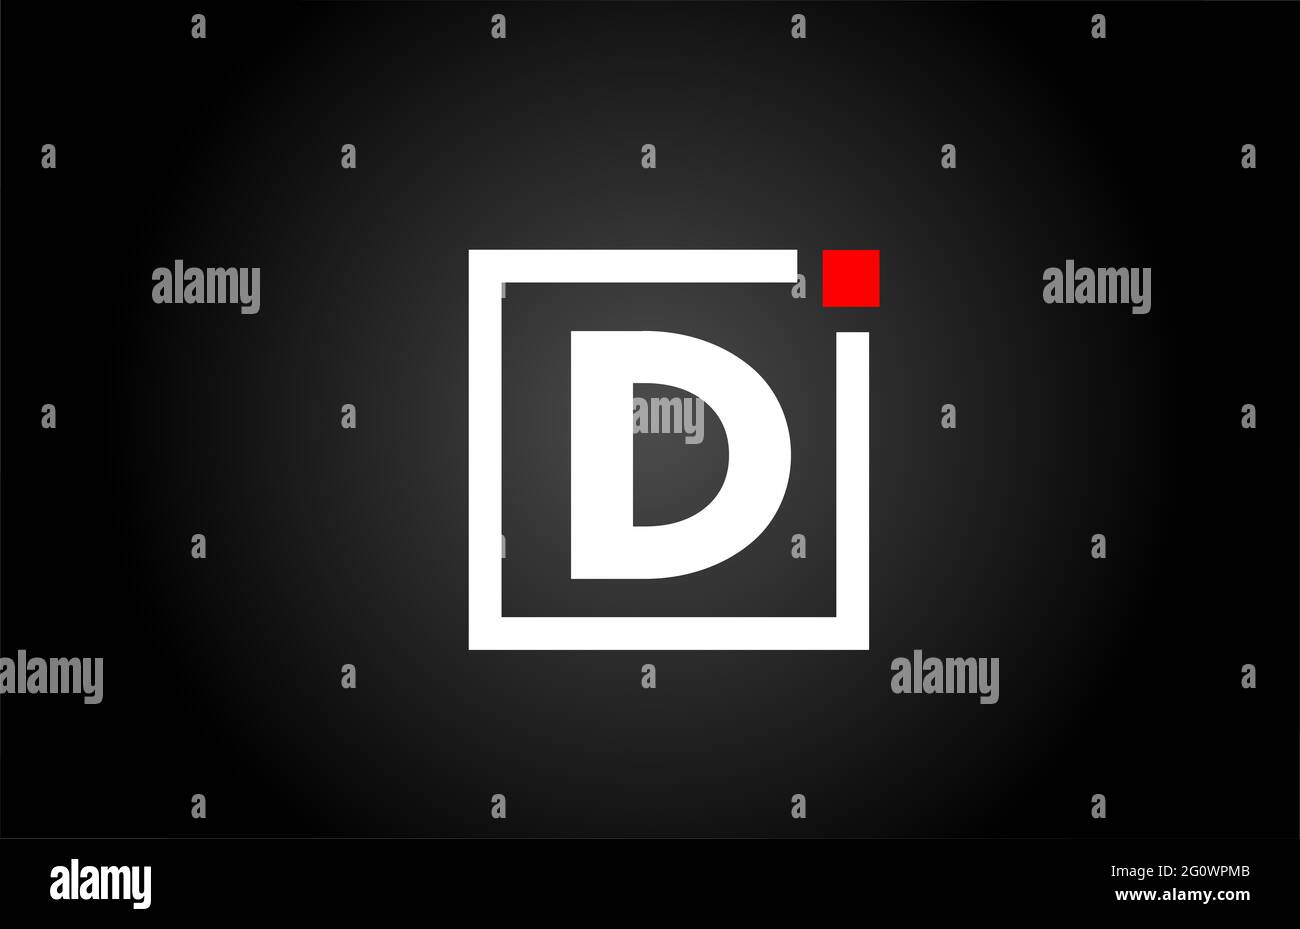 Logo con l'icona lettera dell'alfabeto D in bianco e nero. Design aziendale e aziendale con punto quadrato e rosso. Modello di identità aziendale creativa Foto Stock